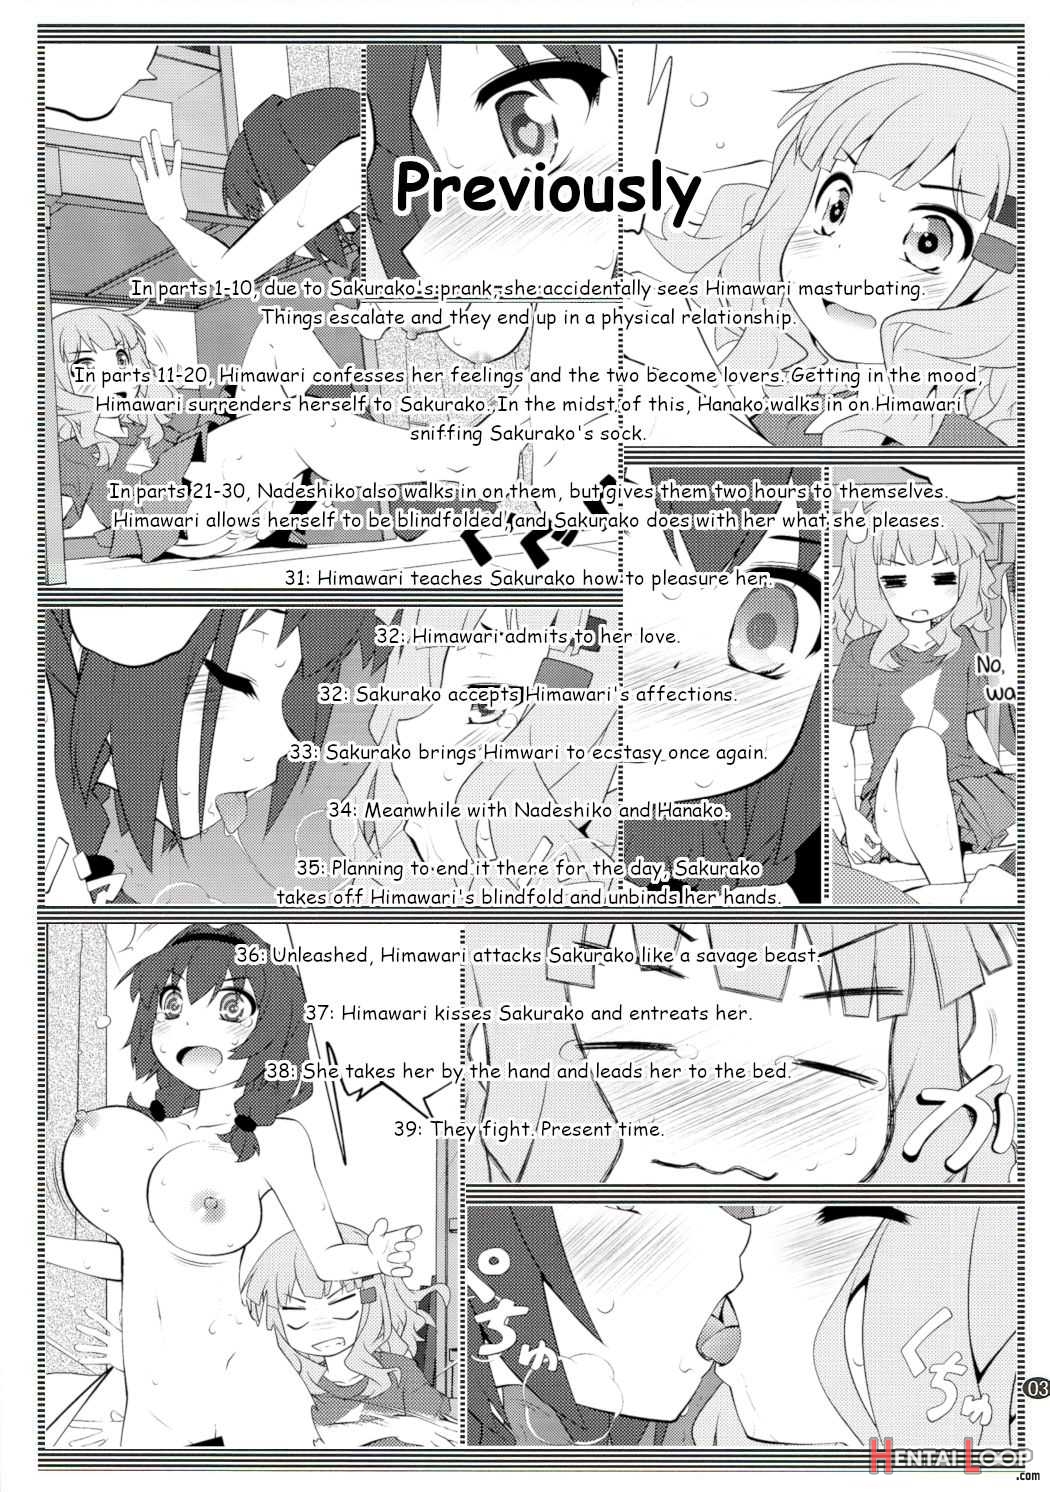 Secret Flowers 12 page 2